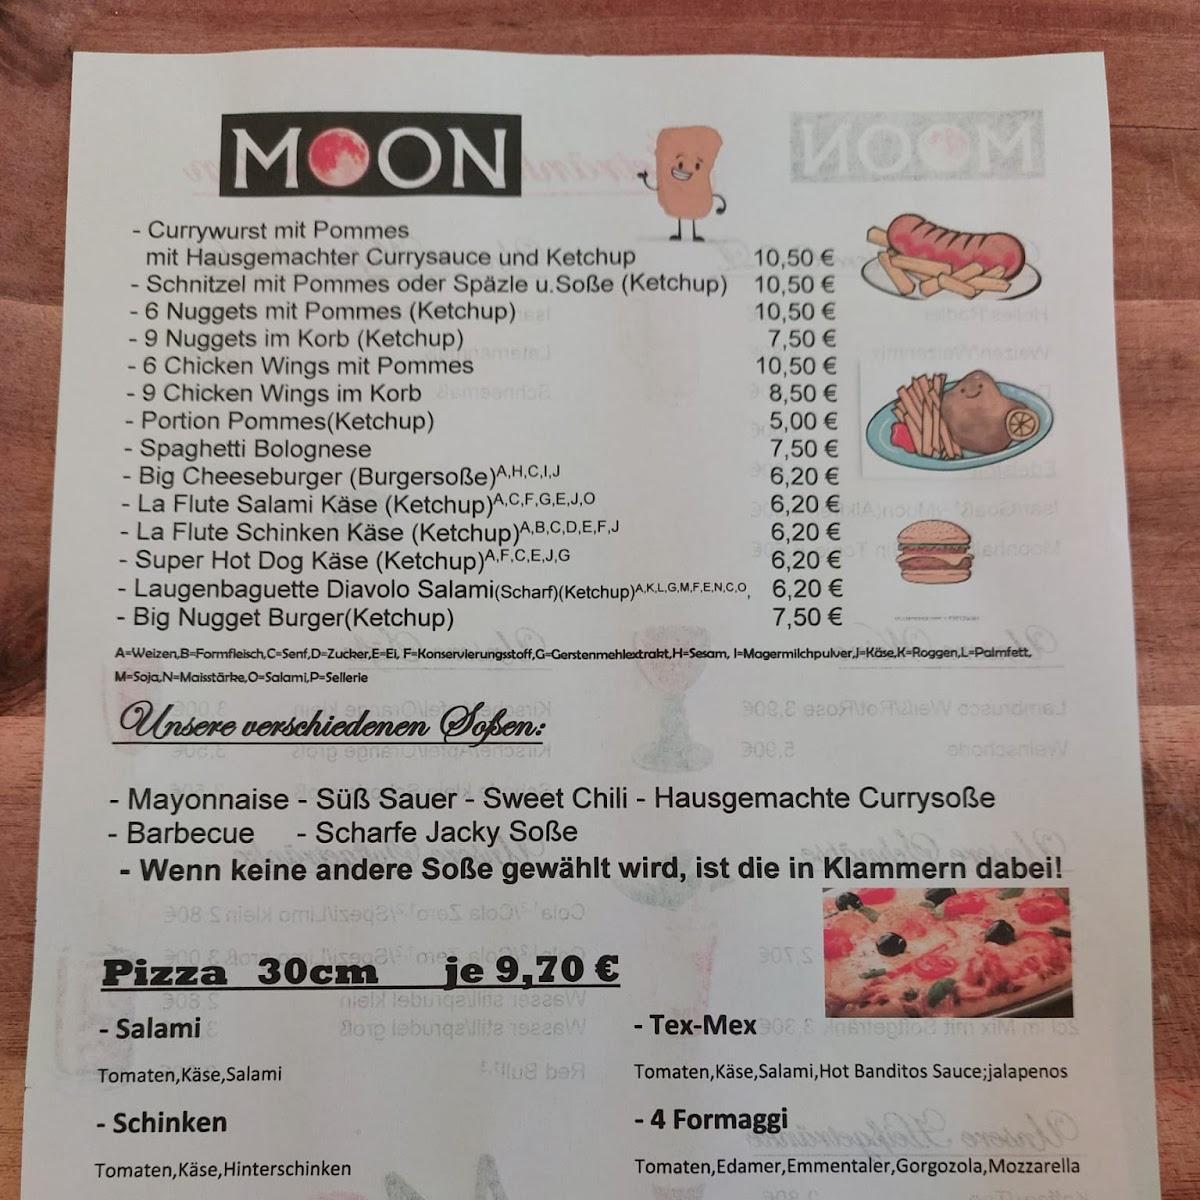 Restaurant "Moon" in Plattling